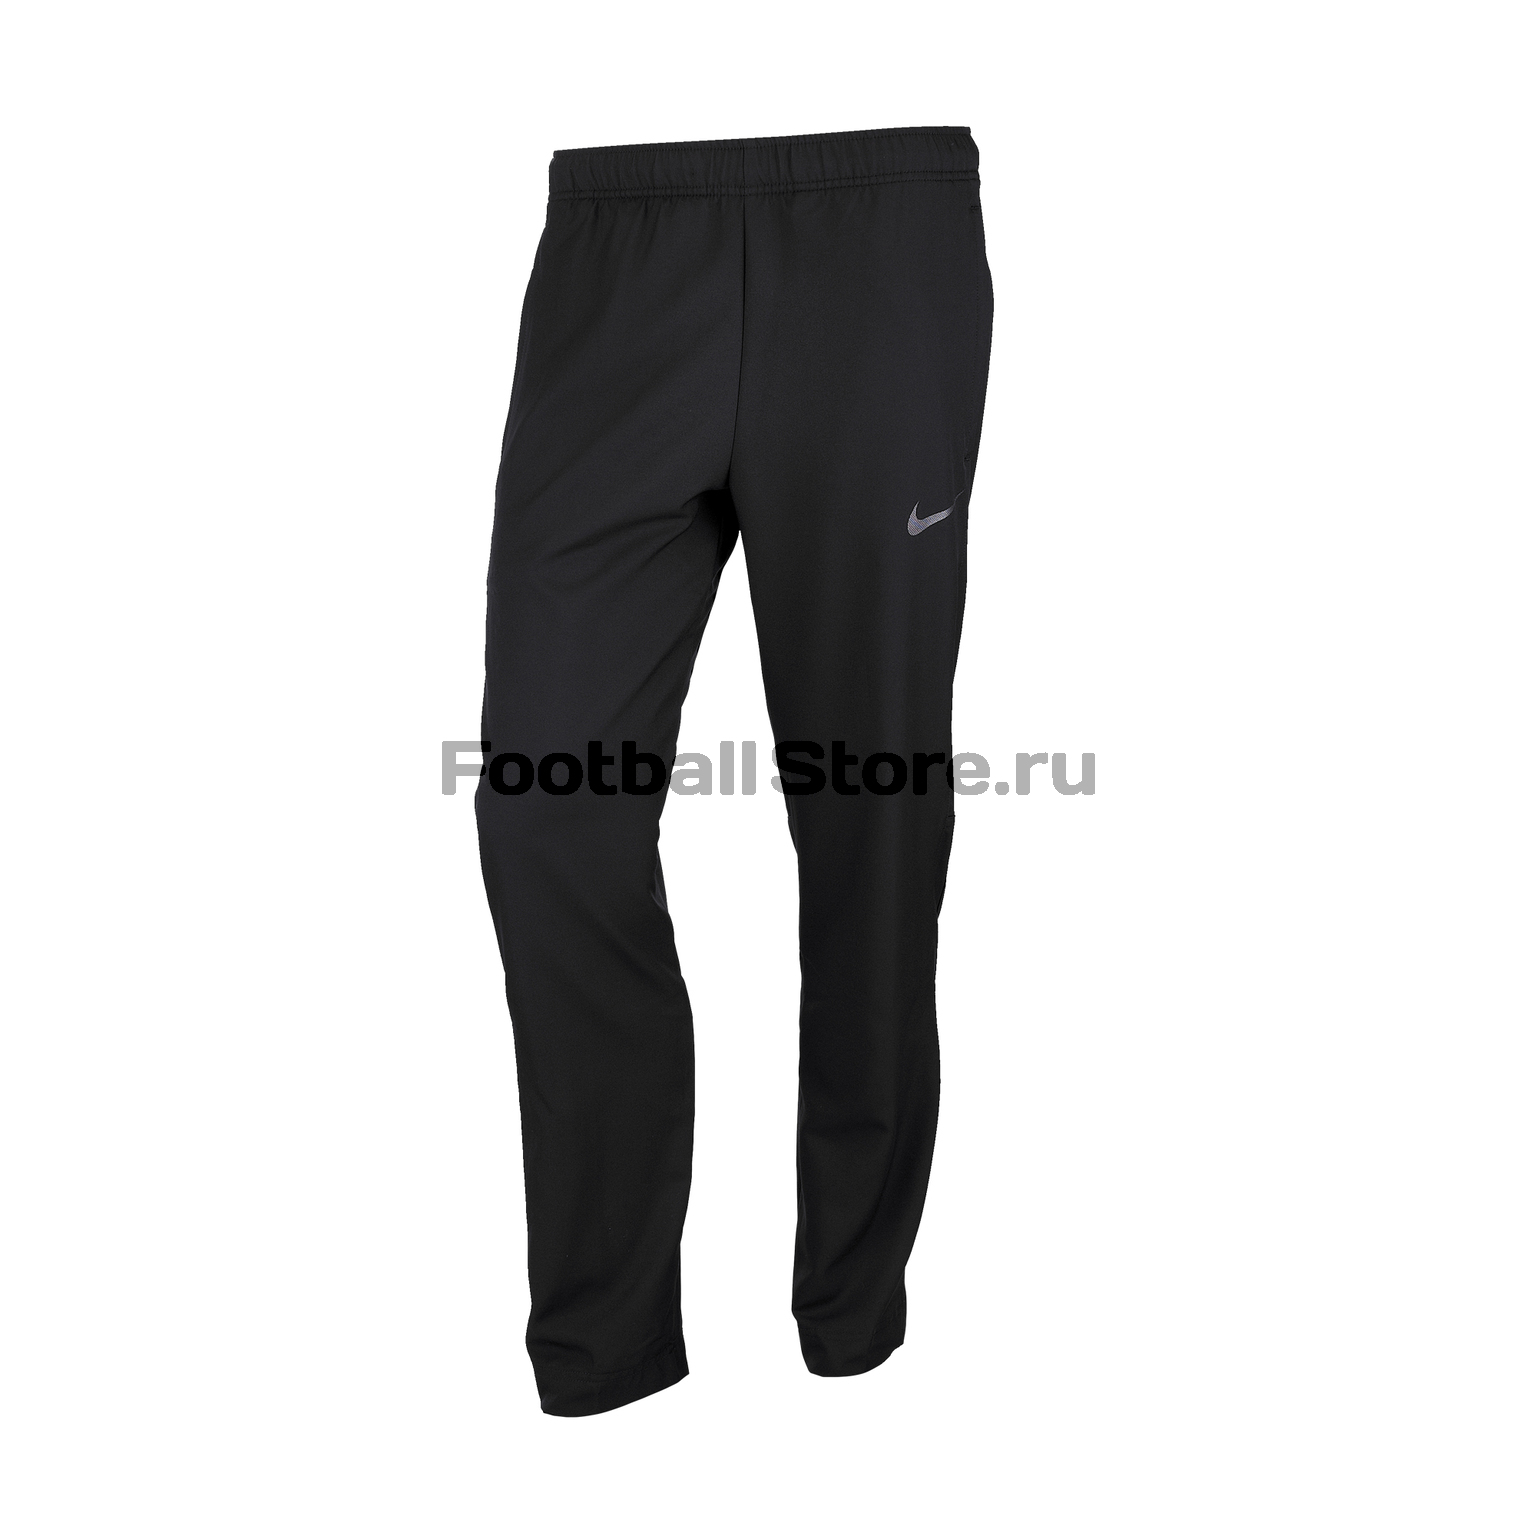 Брюки Nike Dry Pant Team 927380-013